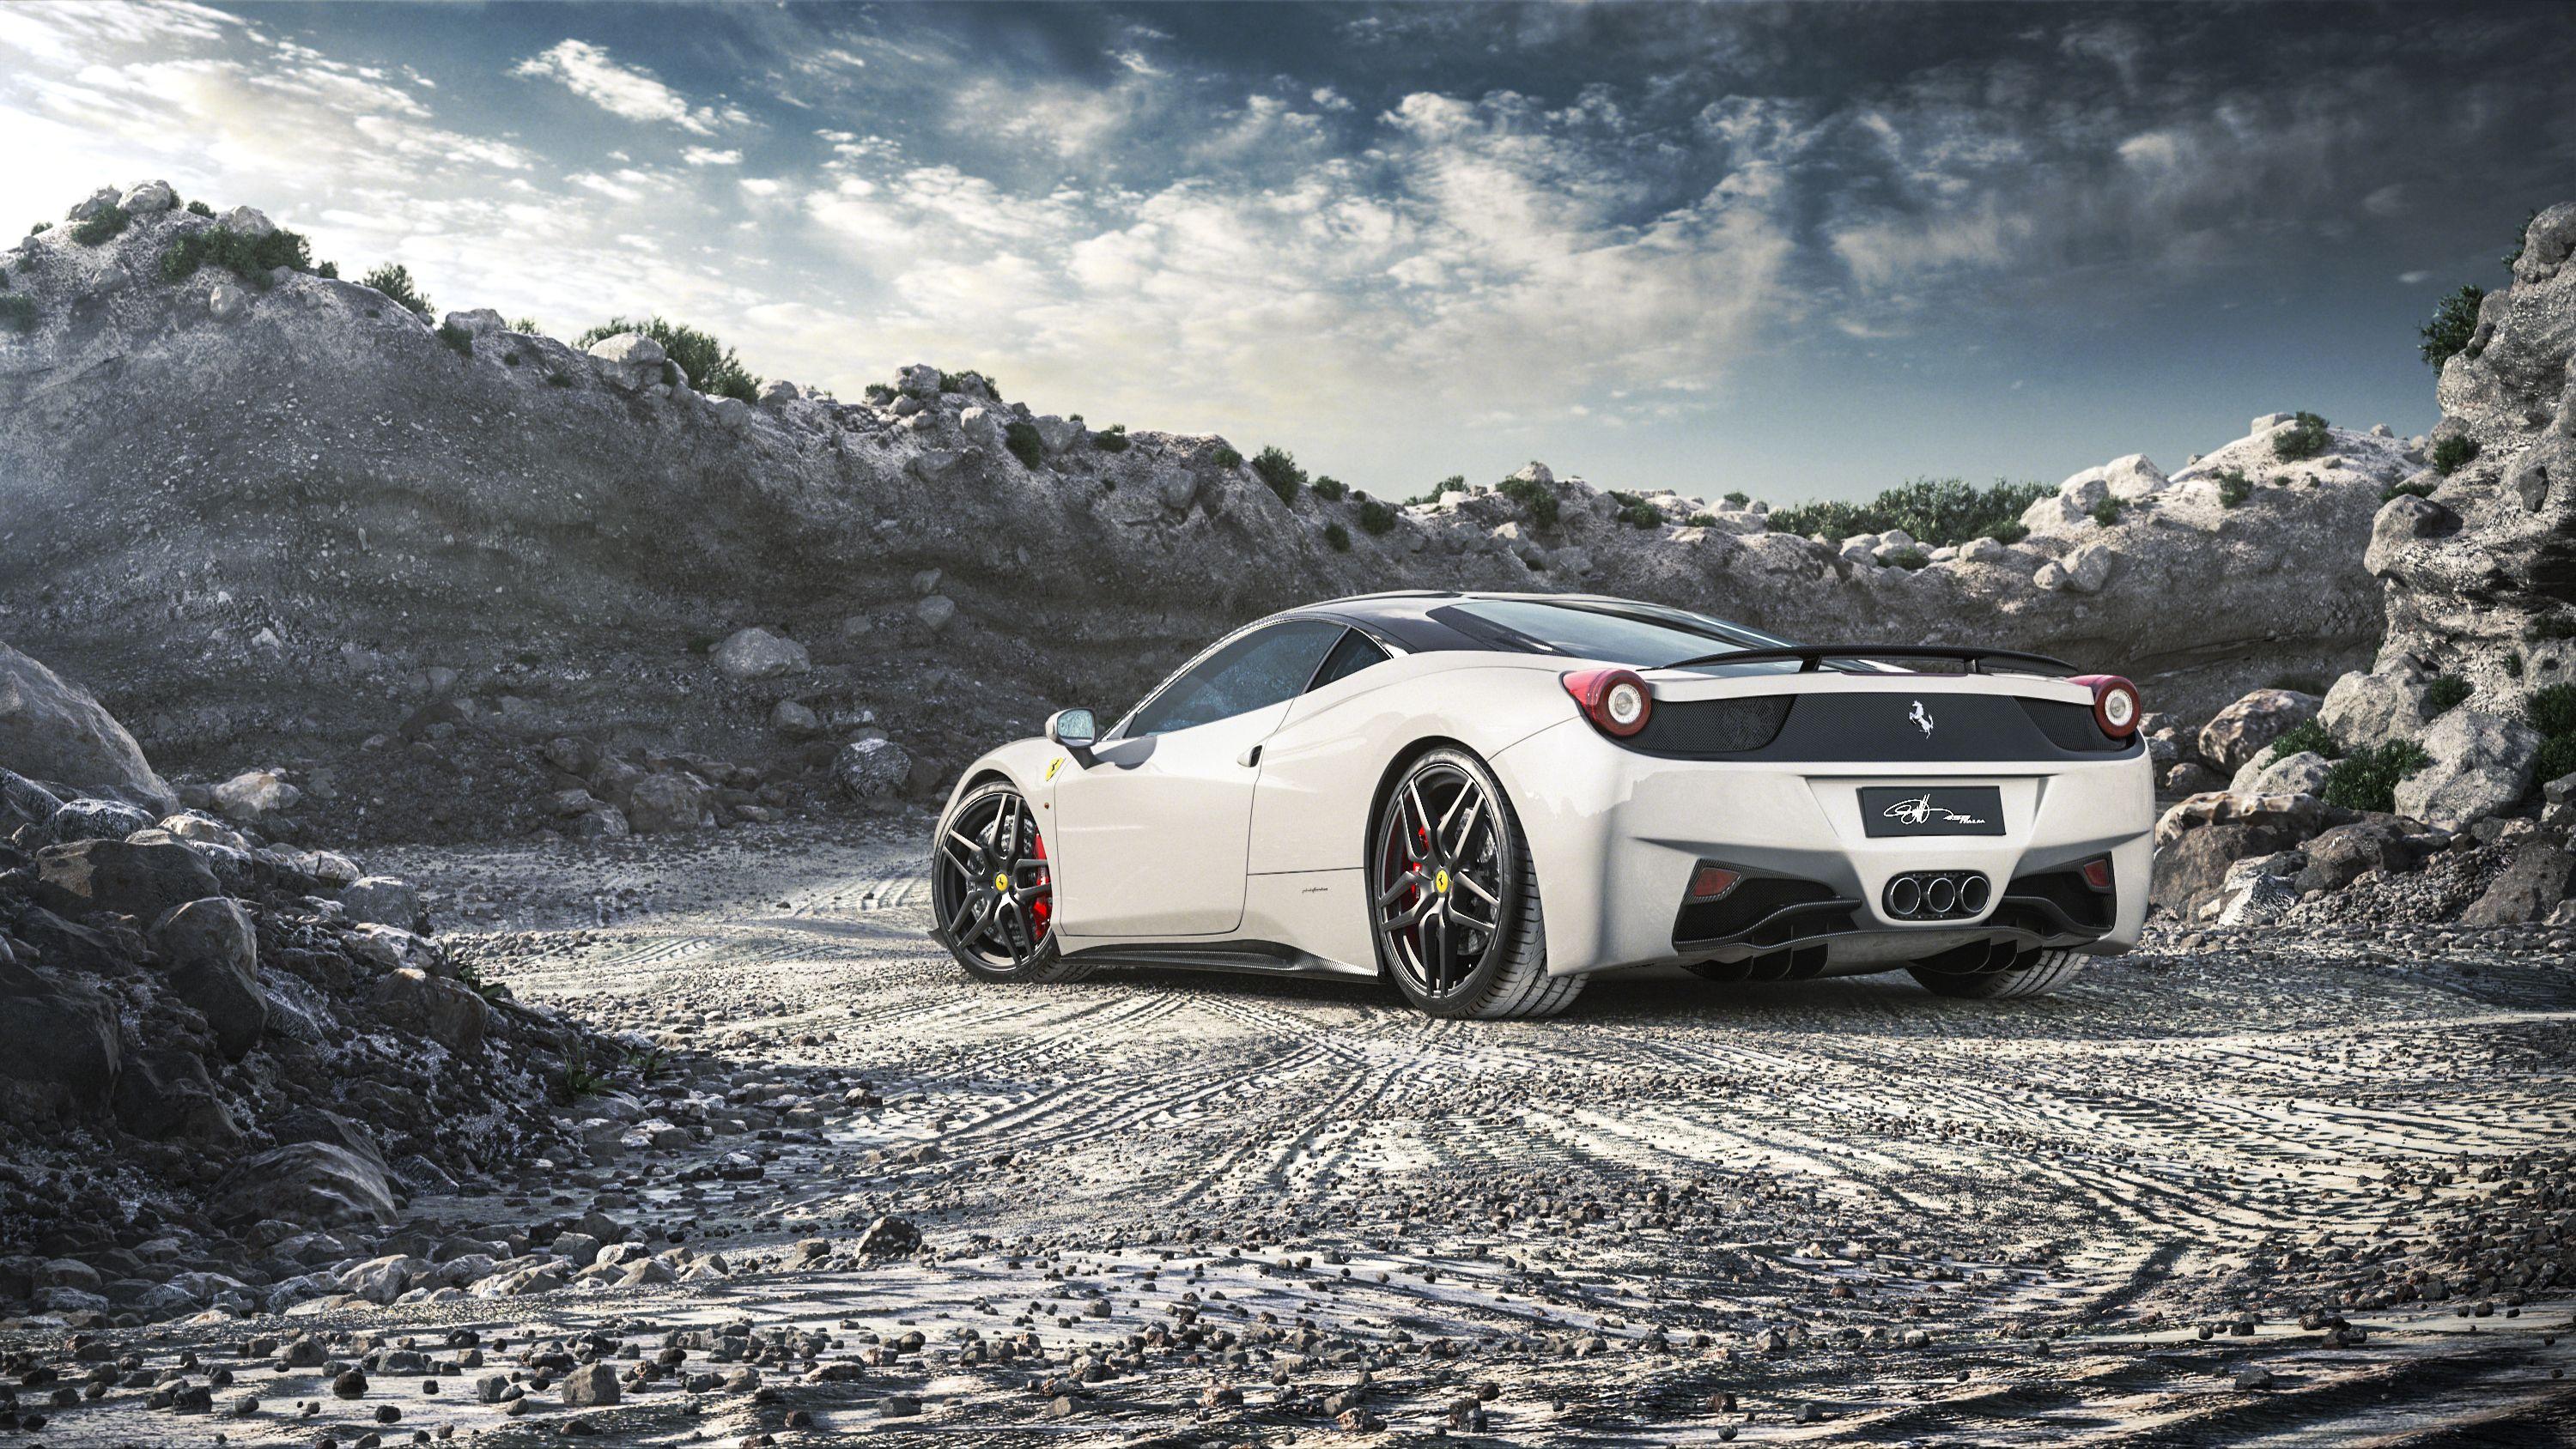 3000x1688 Ferrari 458 Italia Màu trắng, Ô tô HD, Hình nền 4k, Hình ảnh